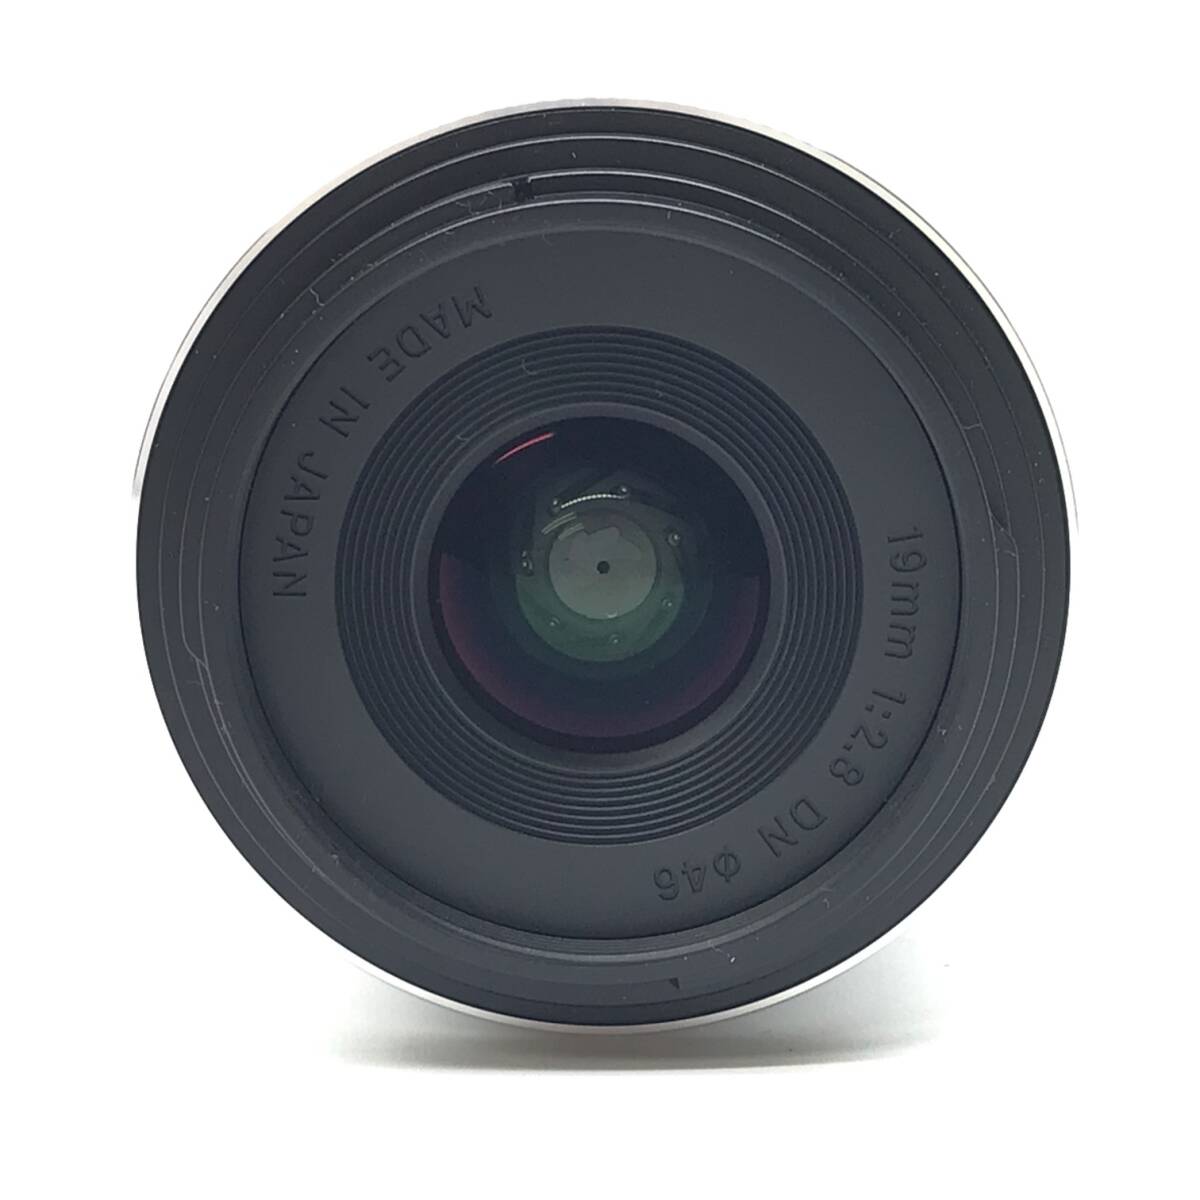 SIGMA シグマ 単焦点広角レンズ Art 19mm F2.8 DN シルバー マイクロフォーサーズ用 ミラーレスカメラ専用 管理YK24001268_画像2